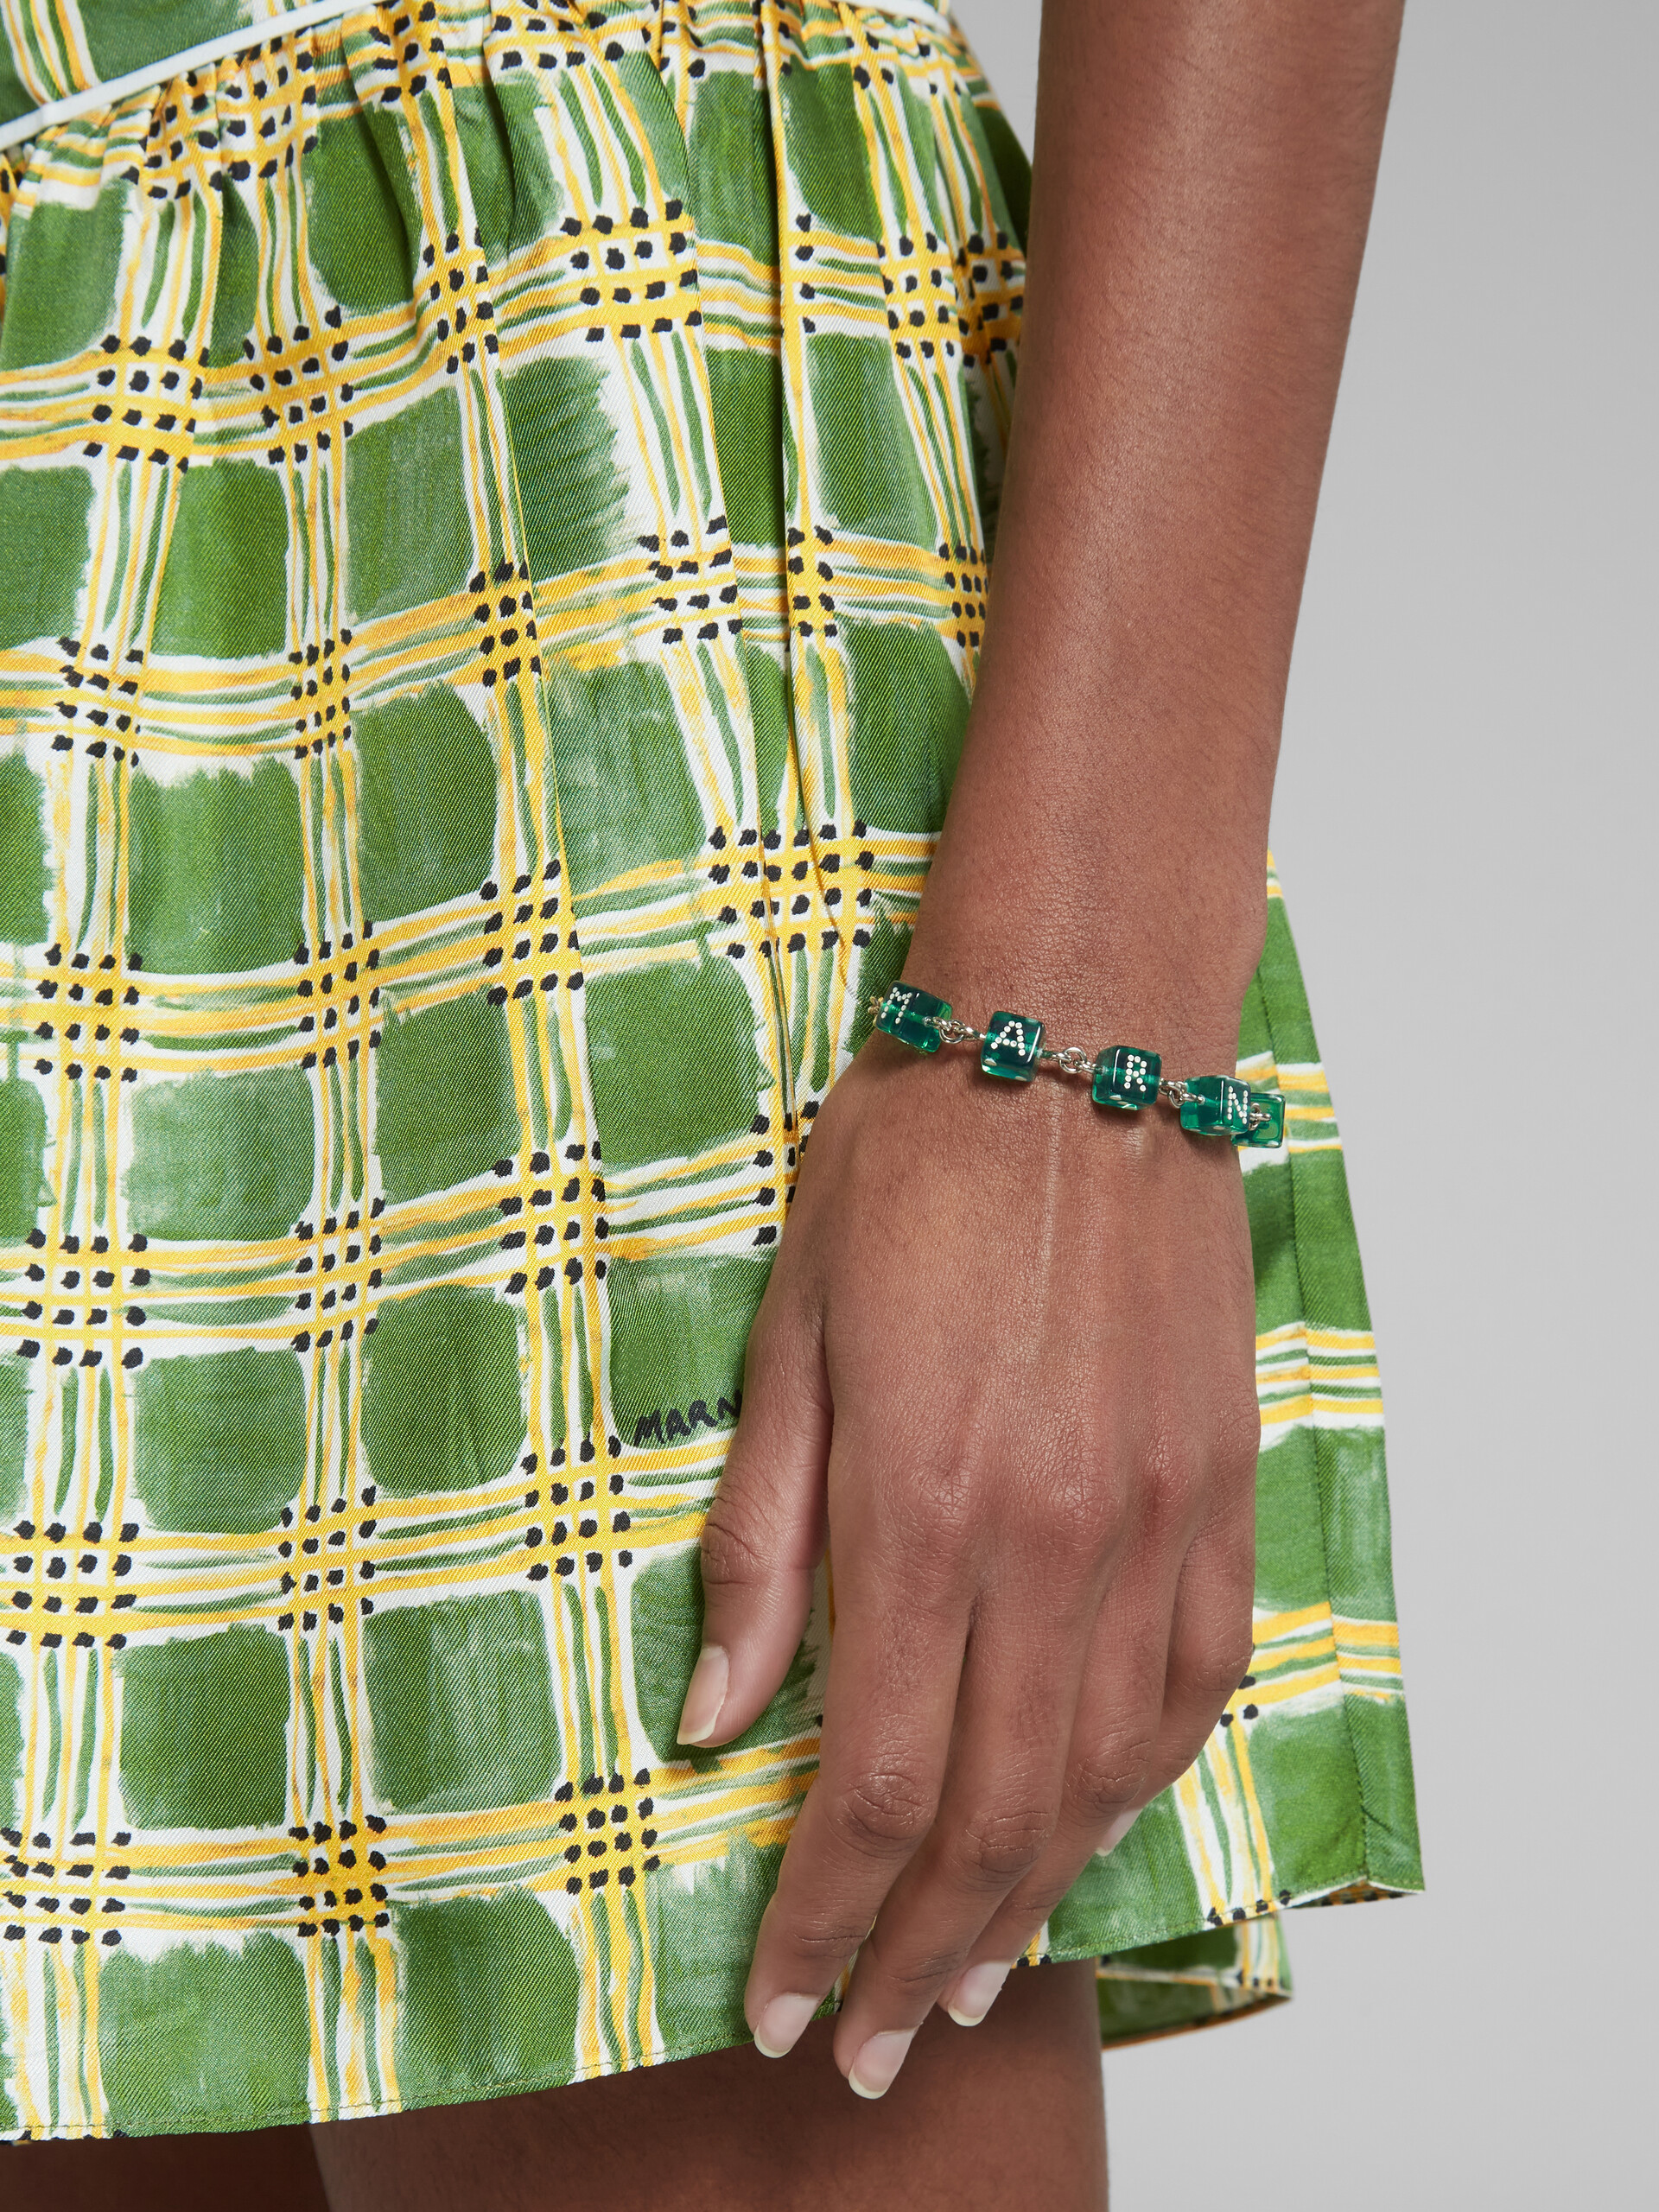 Dice charm bracelet - Bracelets - Image 2